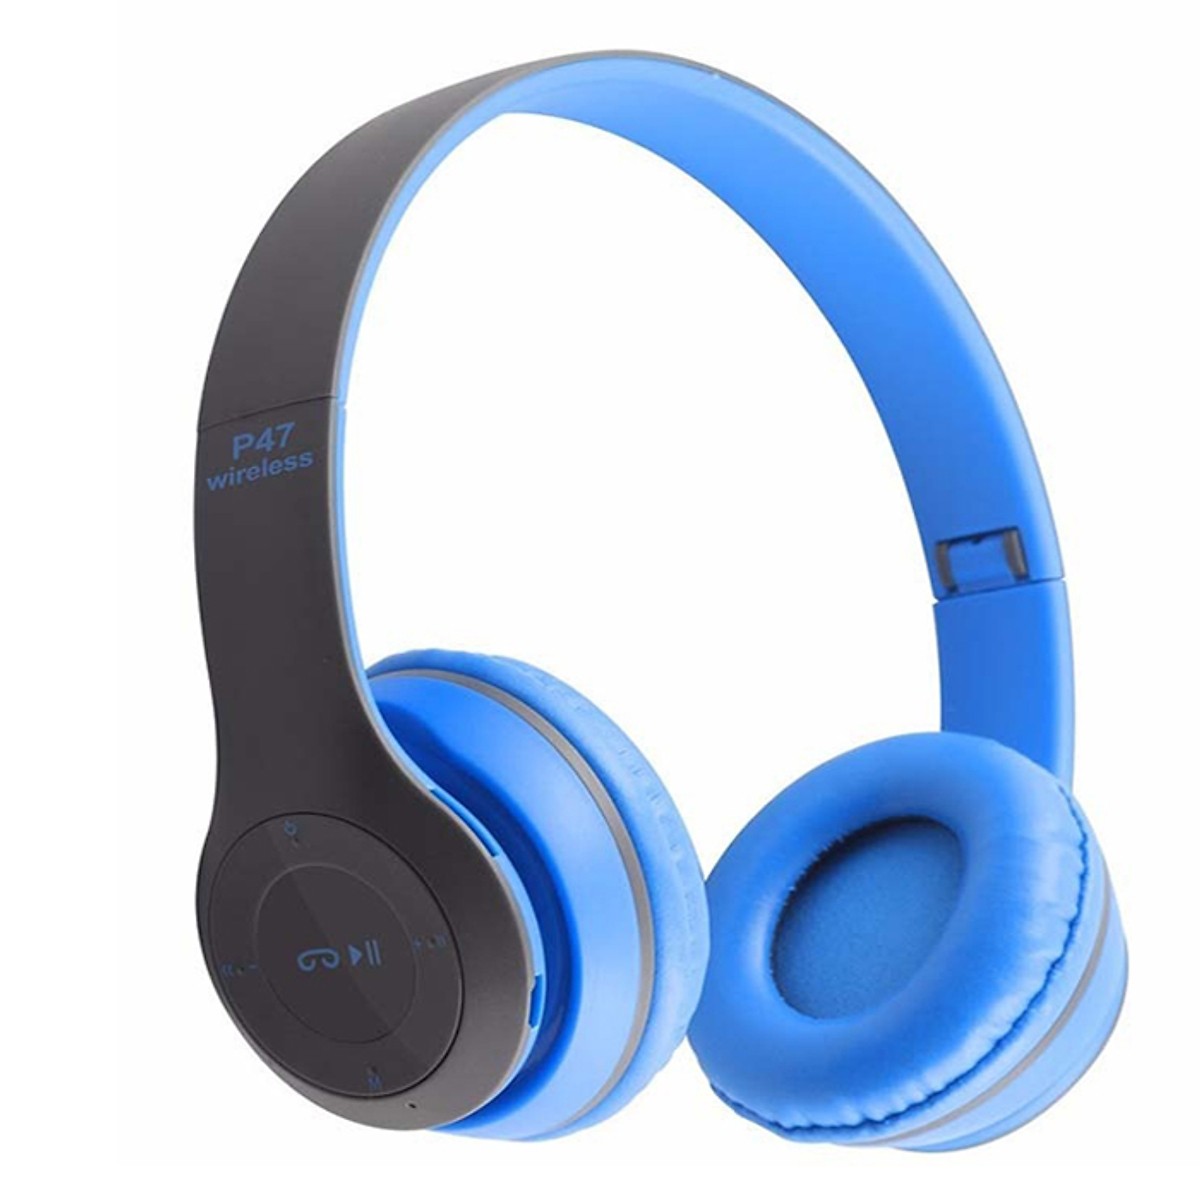 Tai nghe chụp tai cao cấp có khe thẻ nhớ Bluetooth P47